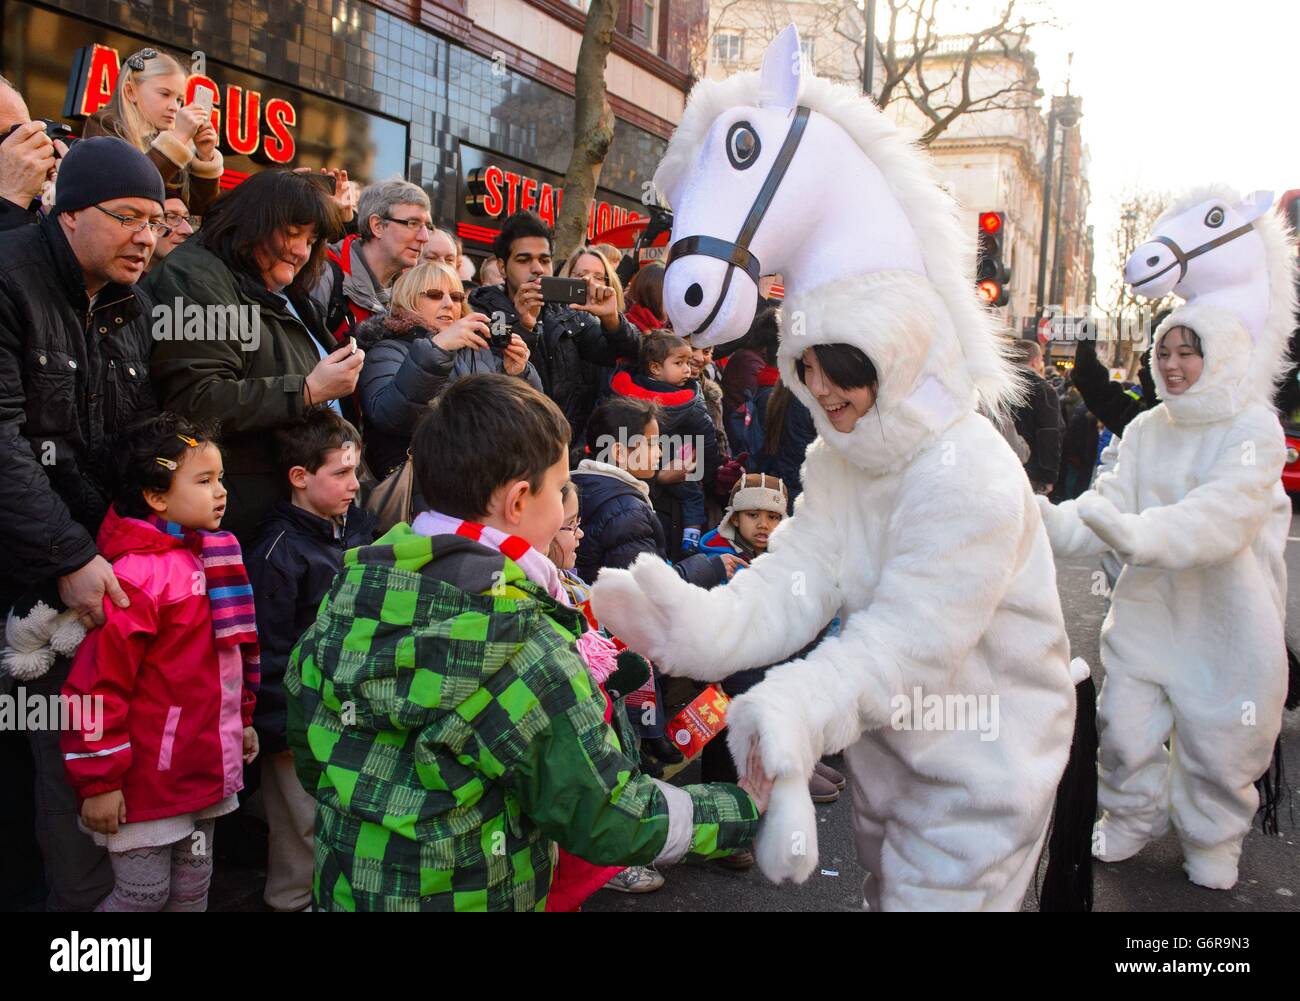 Les artistes en costume accueillent les foules lors du défilé annuel du nouvel an chinois dans le centre de Londres, marquant ainsi le début de l'année du cheval. Banque D'Images